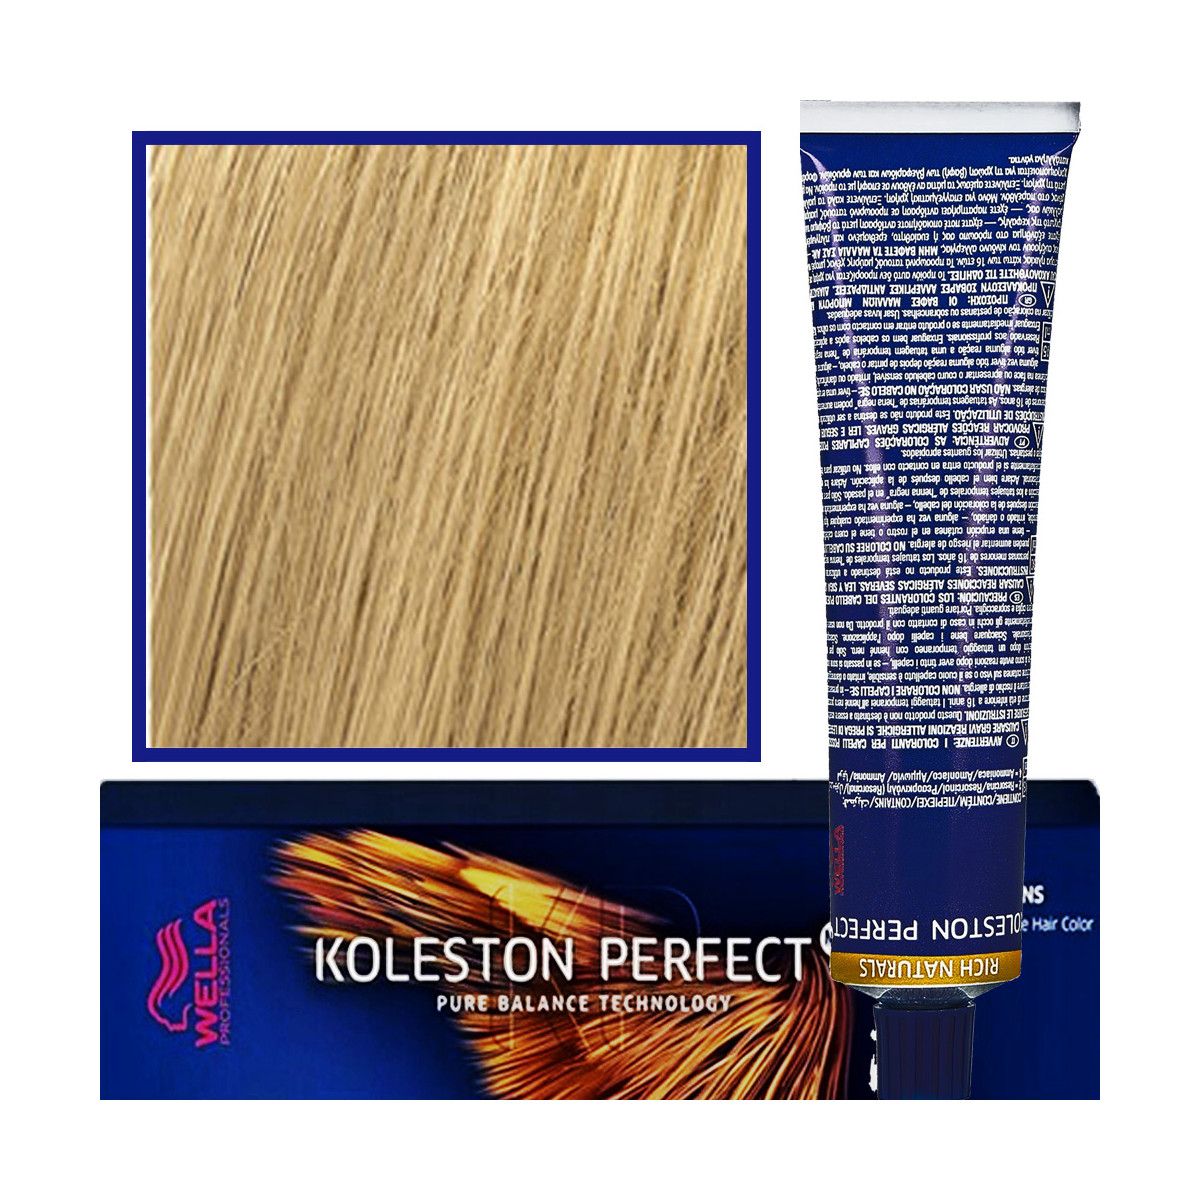 Wella Koleston Perfect Me profesjonalna farba do koloryzacji włosów 60ml kolor 9/0 Bardzo Jasny Blond